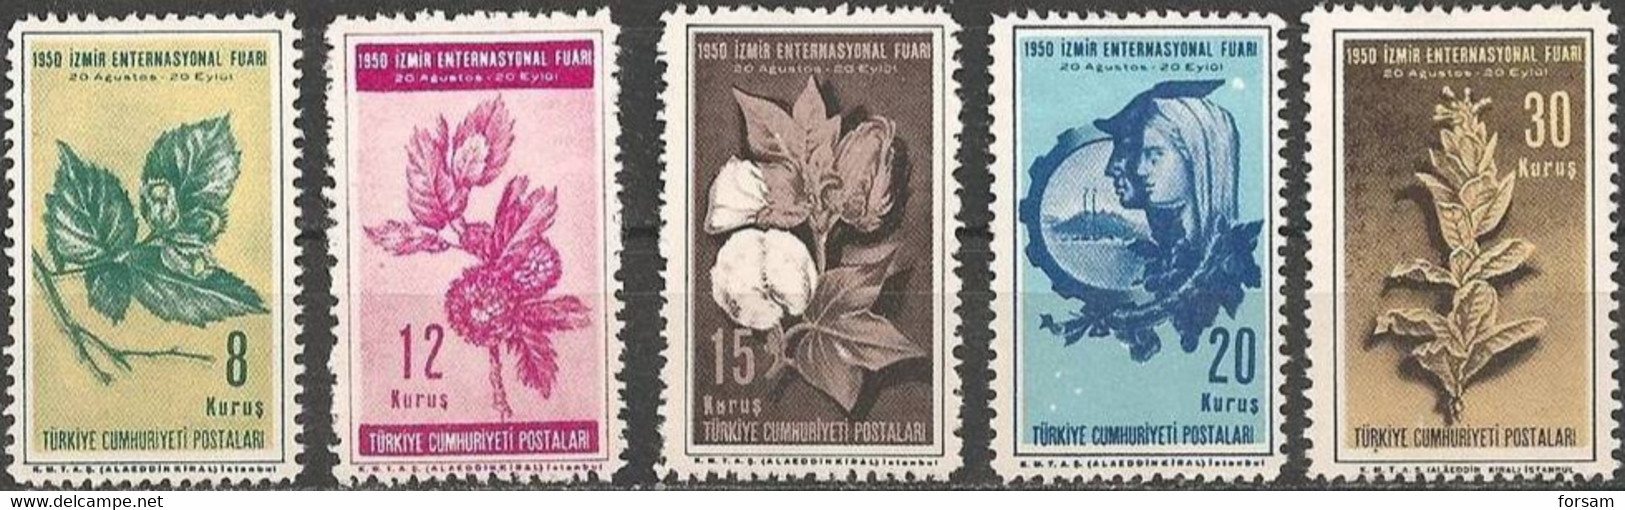 TURKEY..1950..Michel # 1254-1258...MLH...MiCV - 7.50 Euro. - Unused Stamps